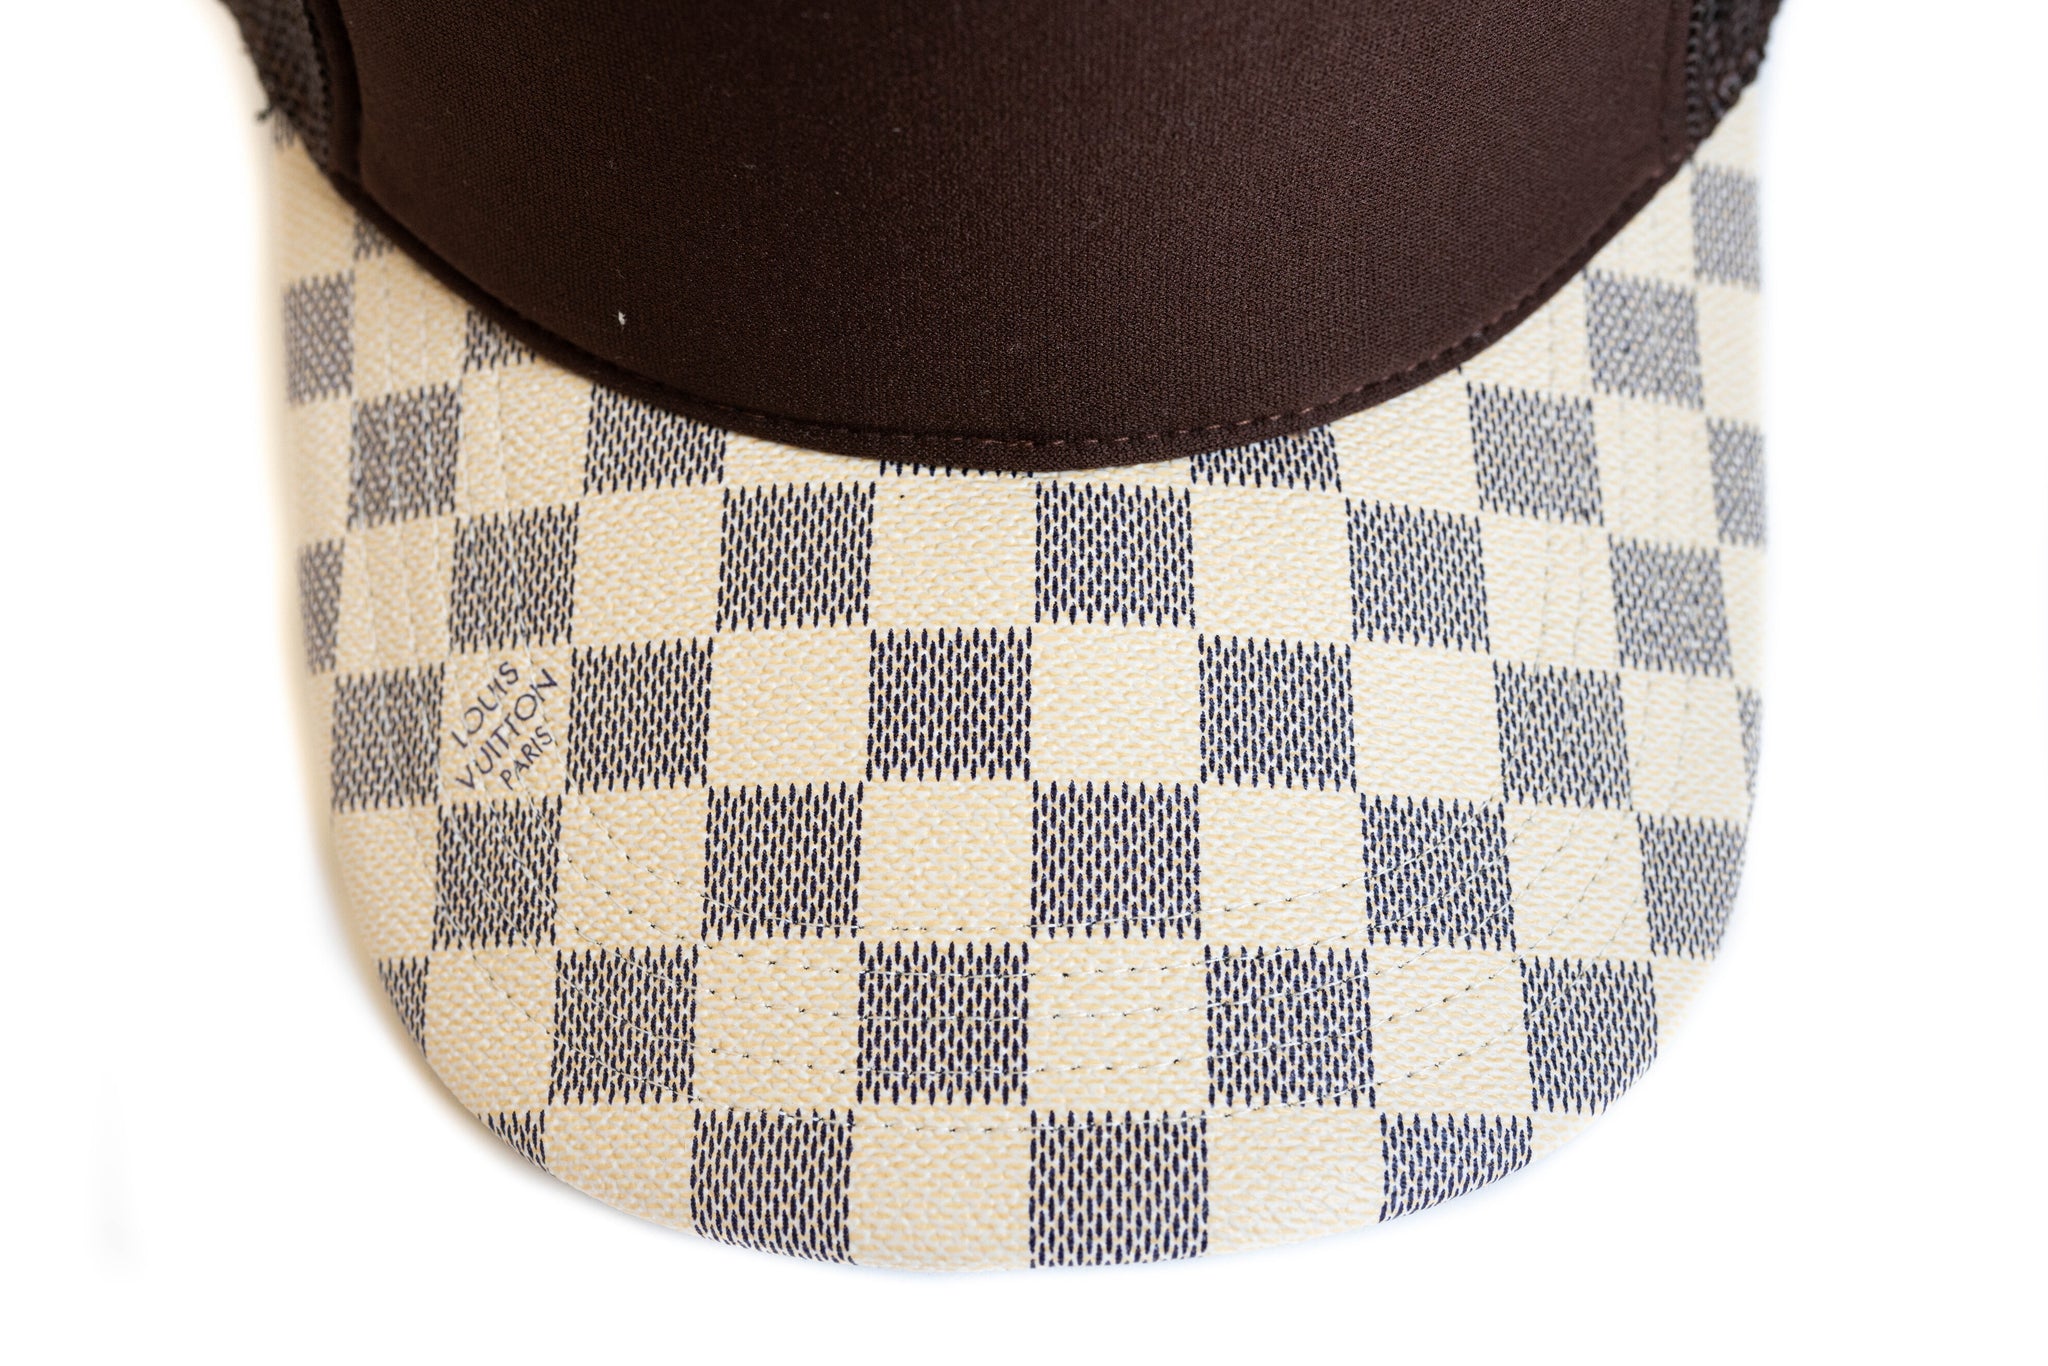 Custom Louis Vuitton Damier Brown Trucker Hat Strapback